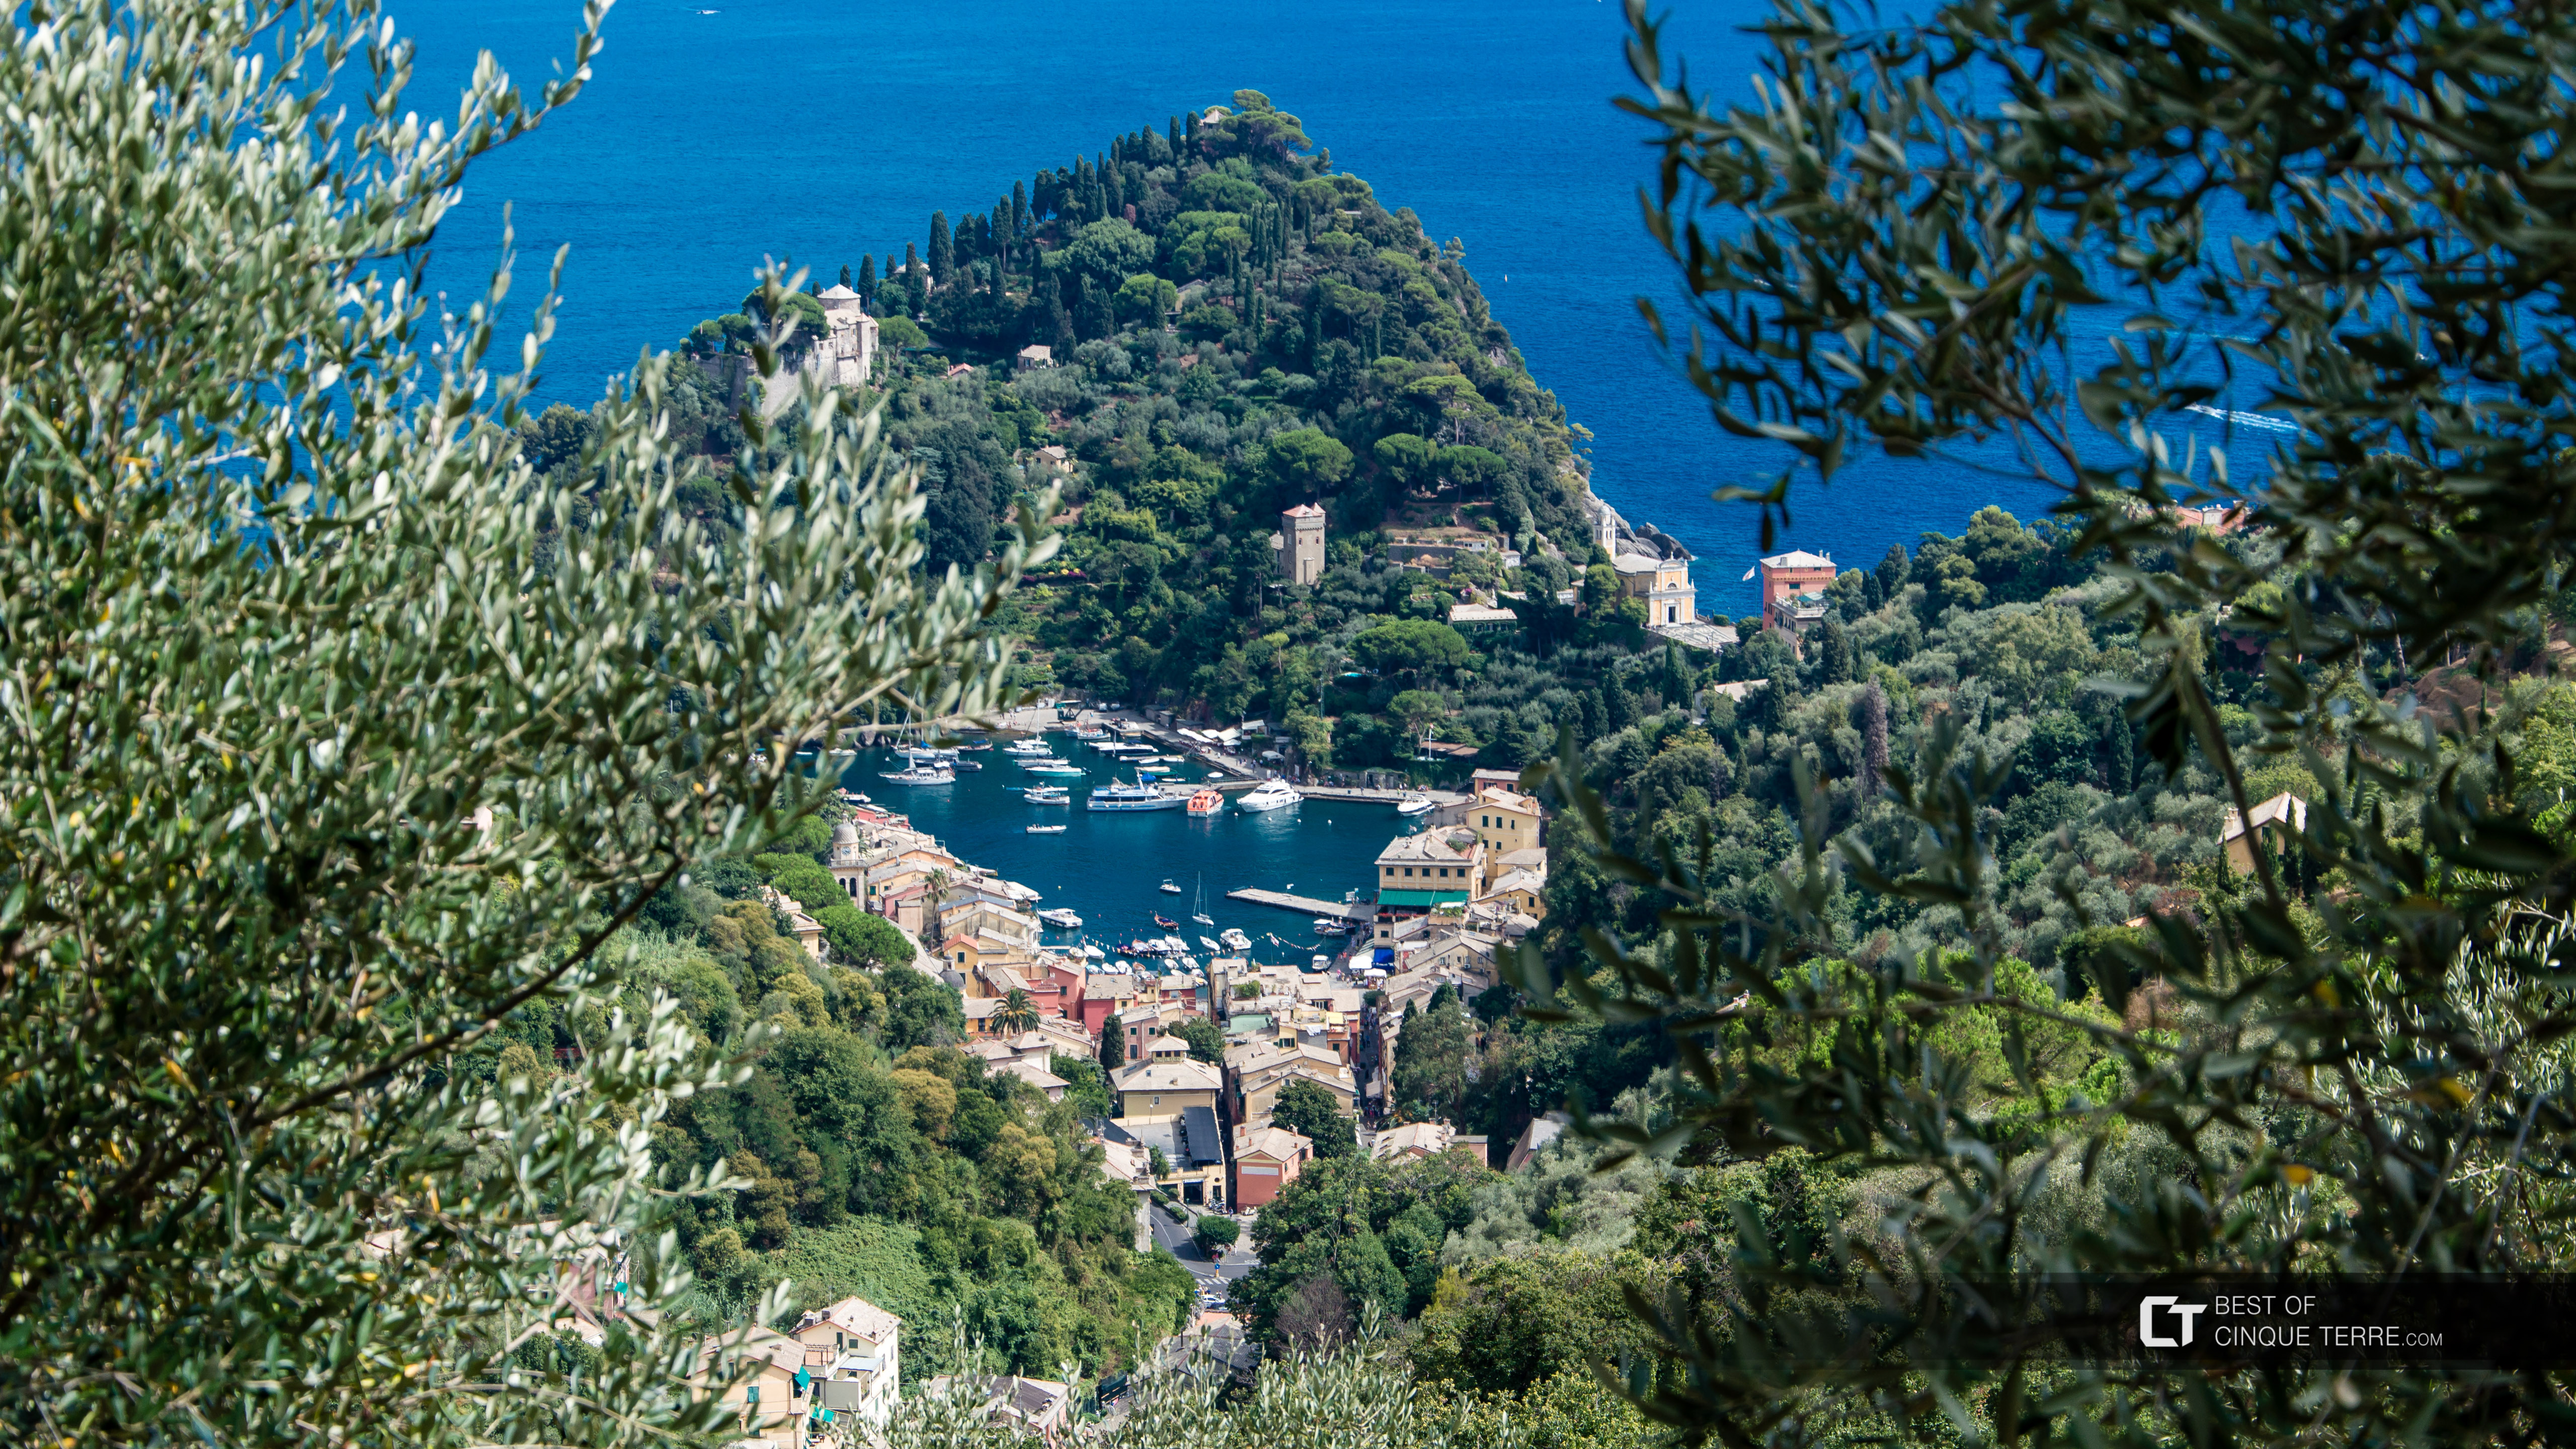 La vista del pueblo desde el camino que lleva a la Abadía de San Fruttuoso, Portofino, Italia